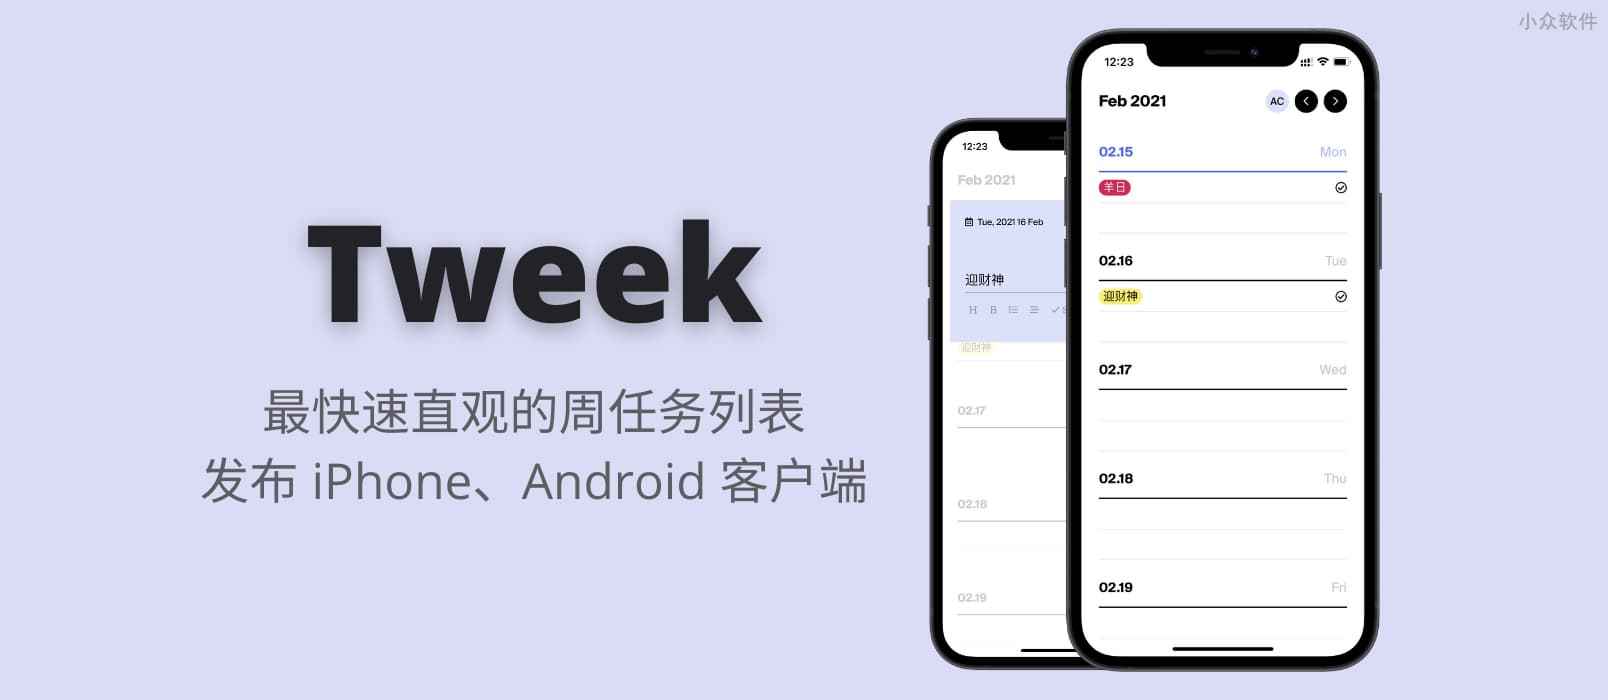 Tweek – 最快速直观的周任务列表发布 iPhone、Android 客户端 1